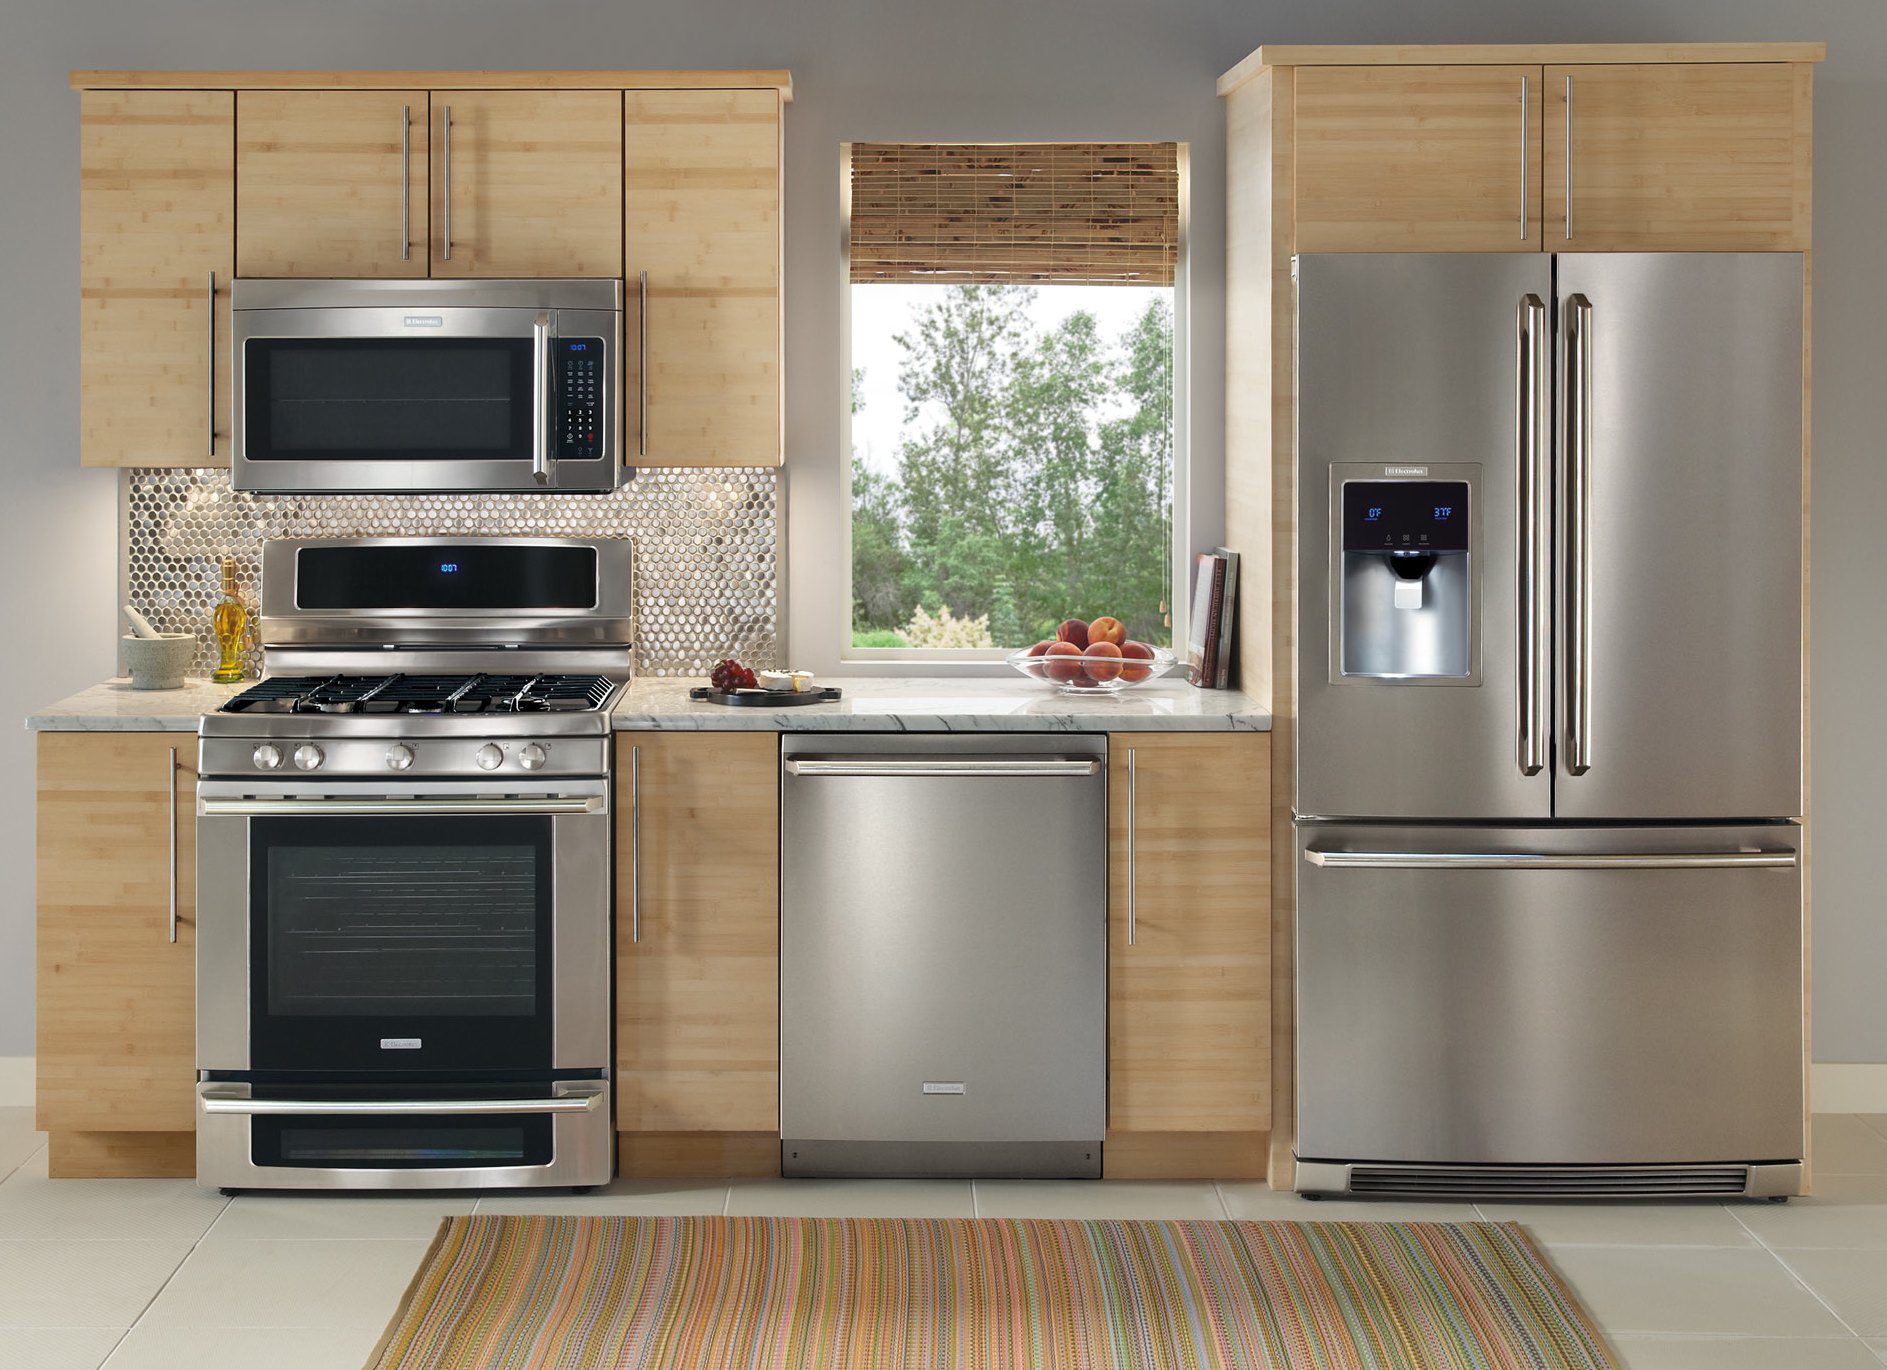 latest design in kitchen appliances